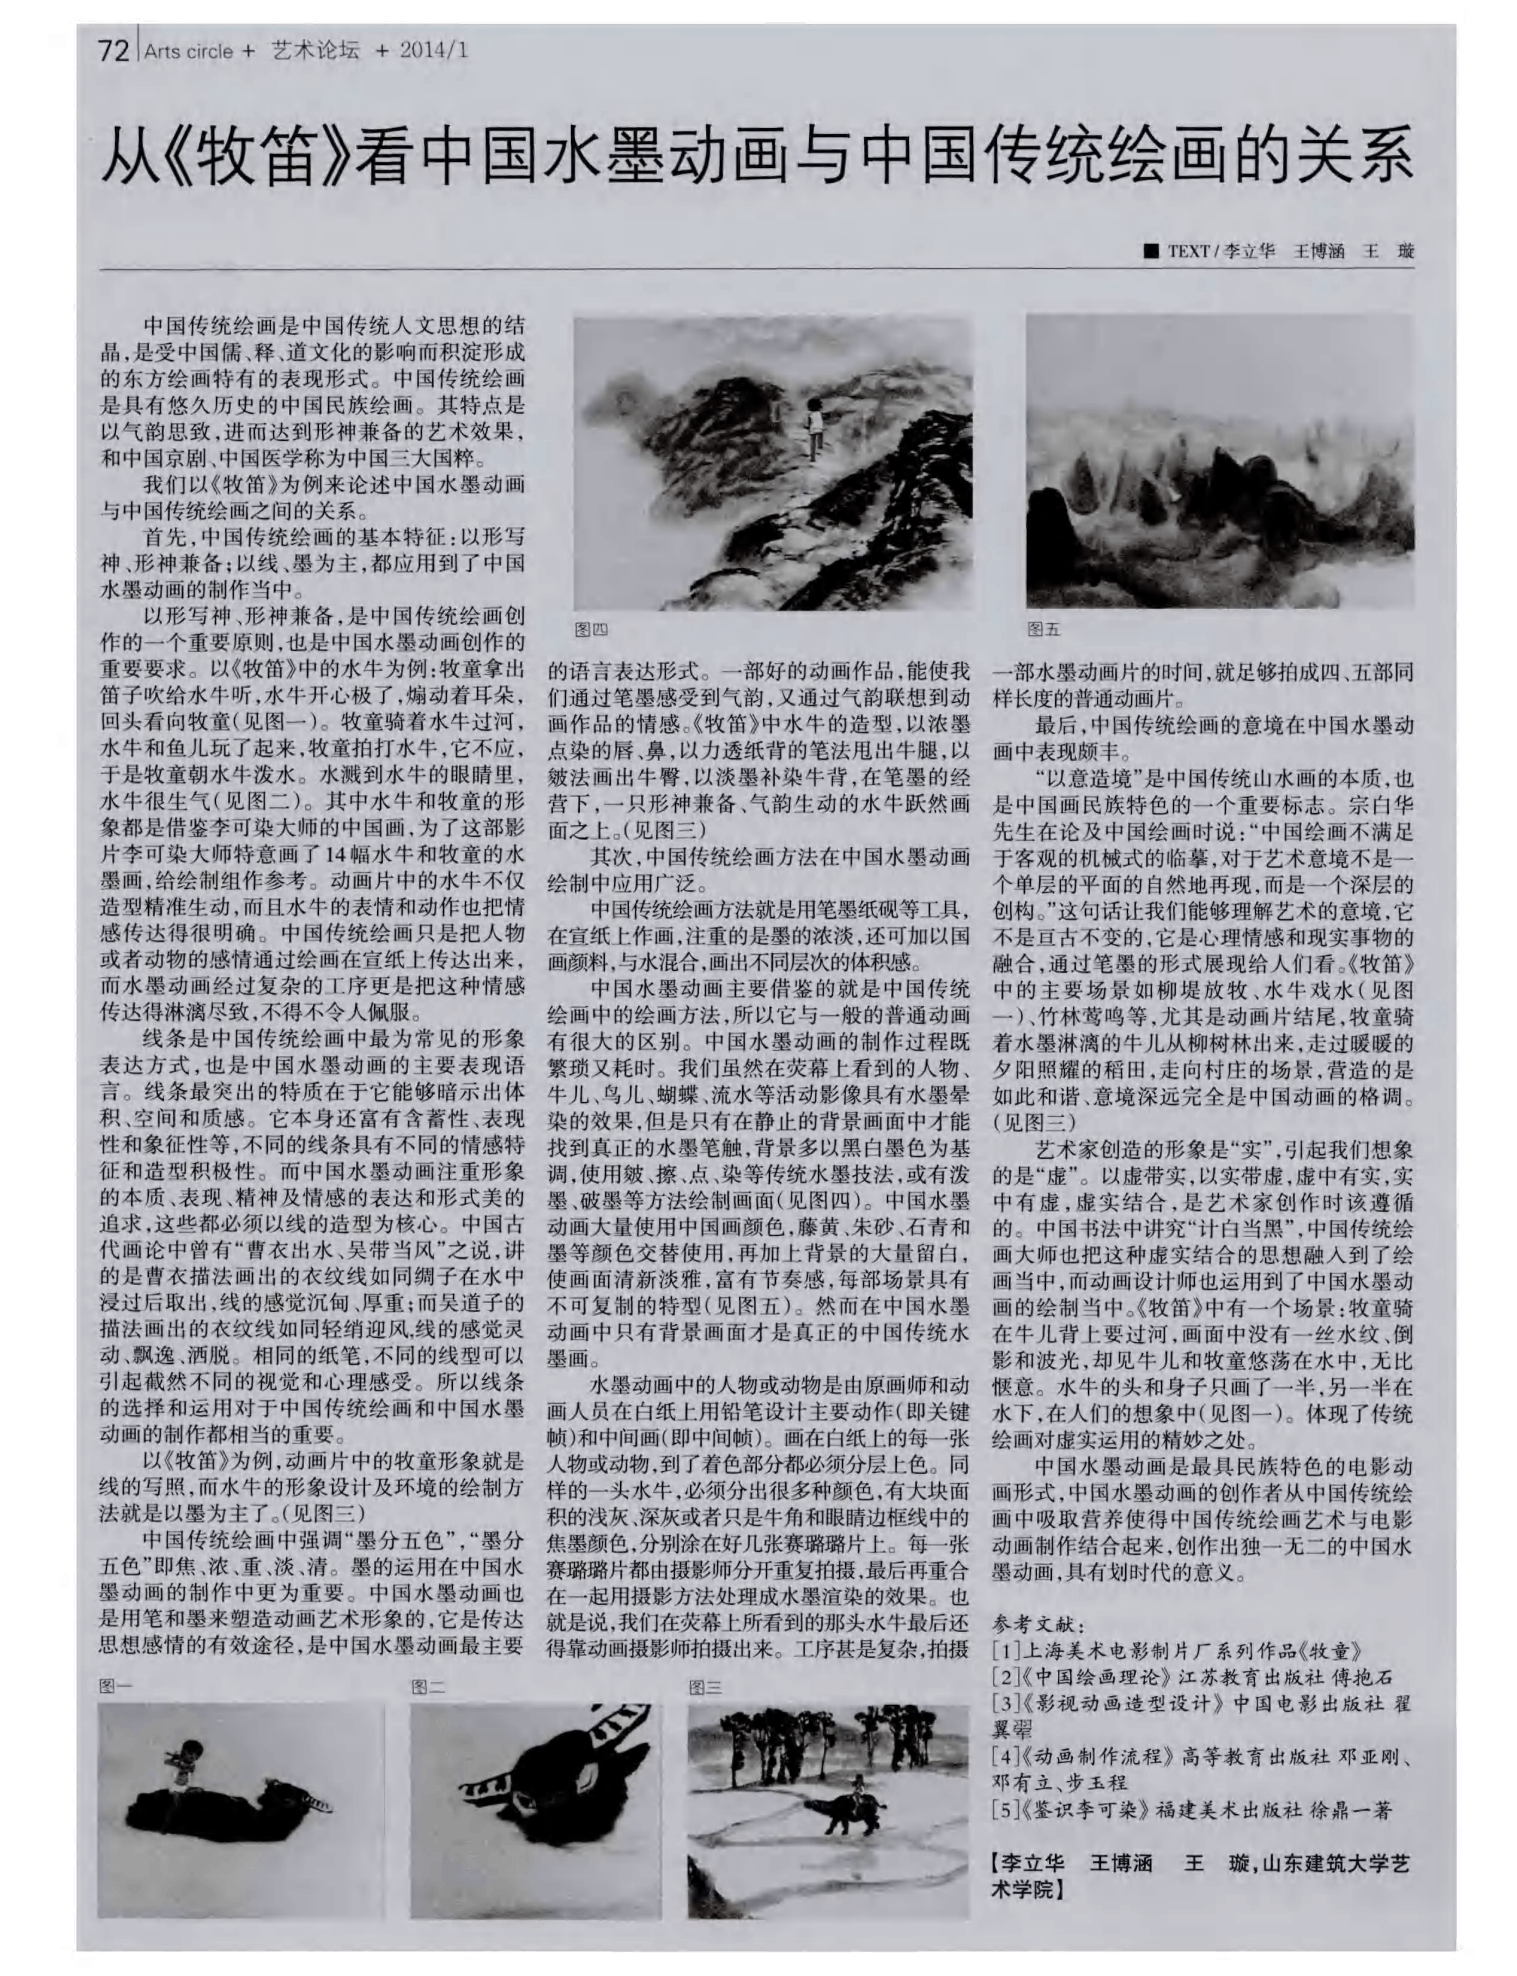 从《牧笛》看中国水墨动画与中国传统绘画的关系